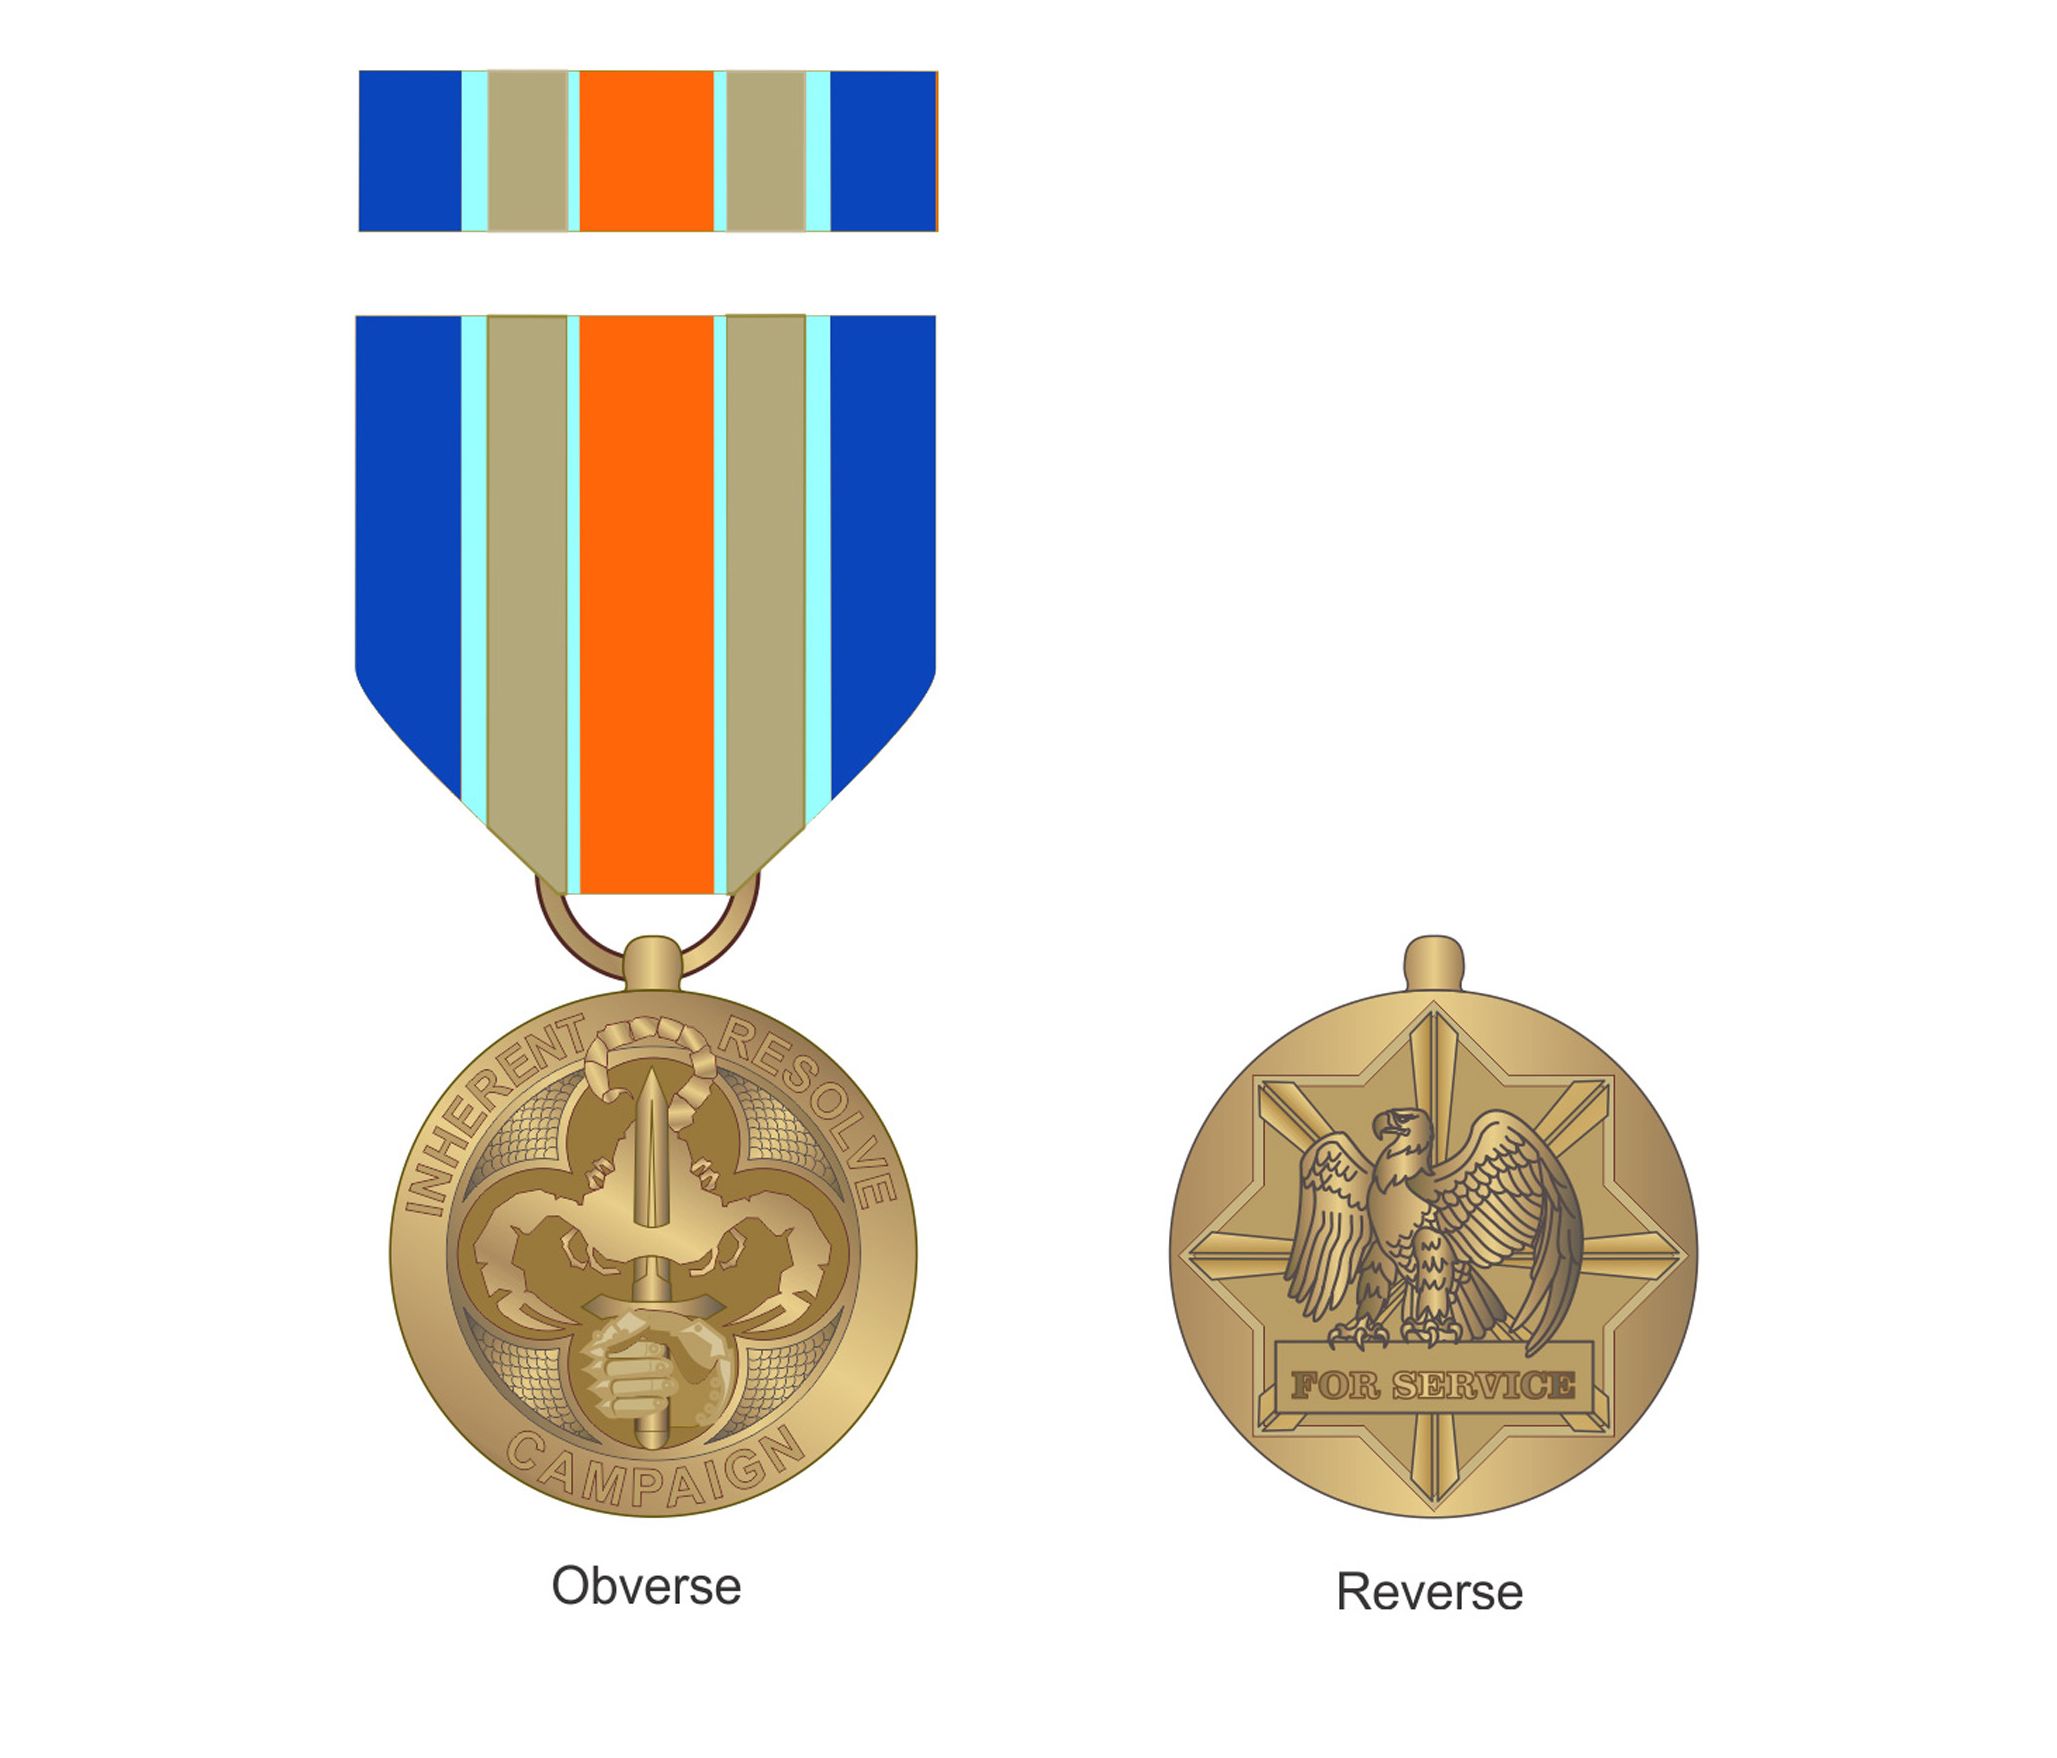 Inhe Resolve Campaign Medal